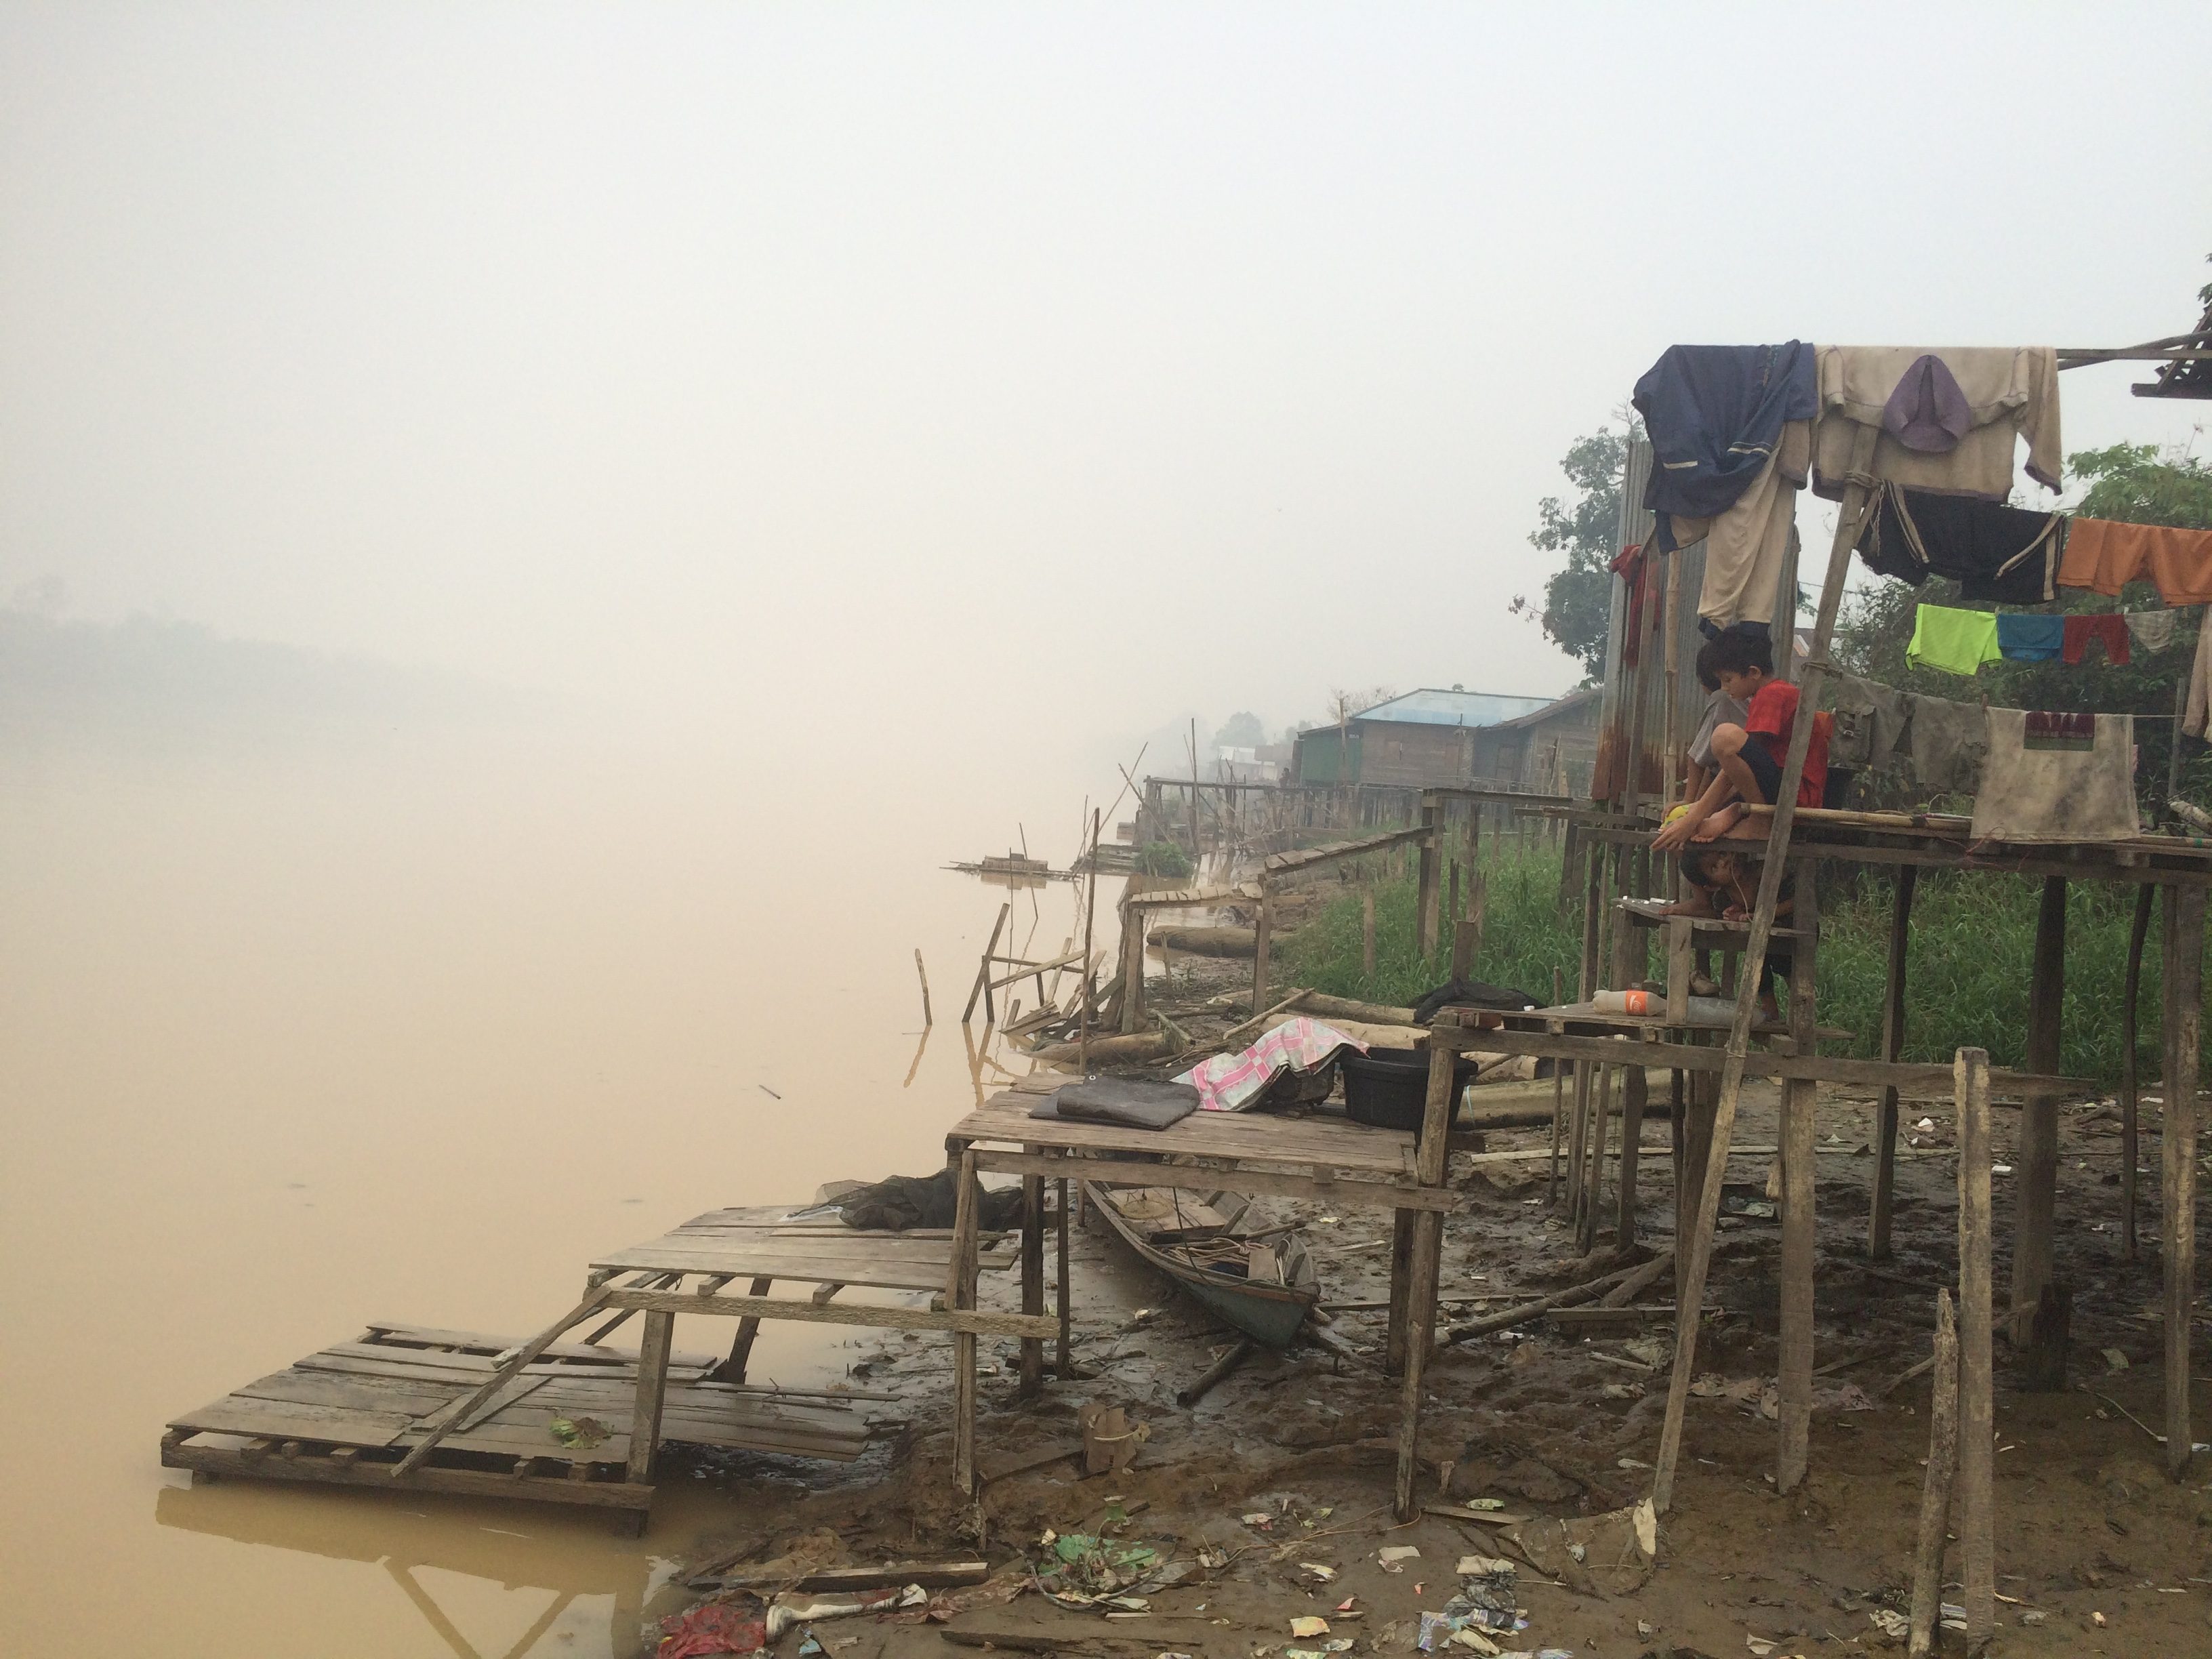 MELAWAN ASAP. Kabut asap di Kalimantan Tengah menghilangkan mata pencahariaan utama nelayan di Desa Tumbang Nusa. Foto oleh Febriana Firdaus/Rappler 